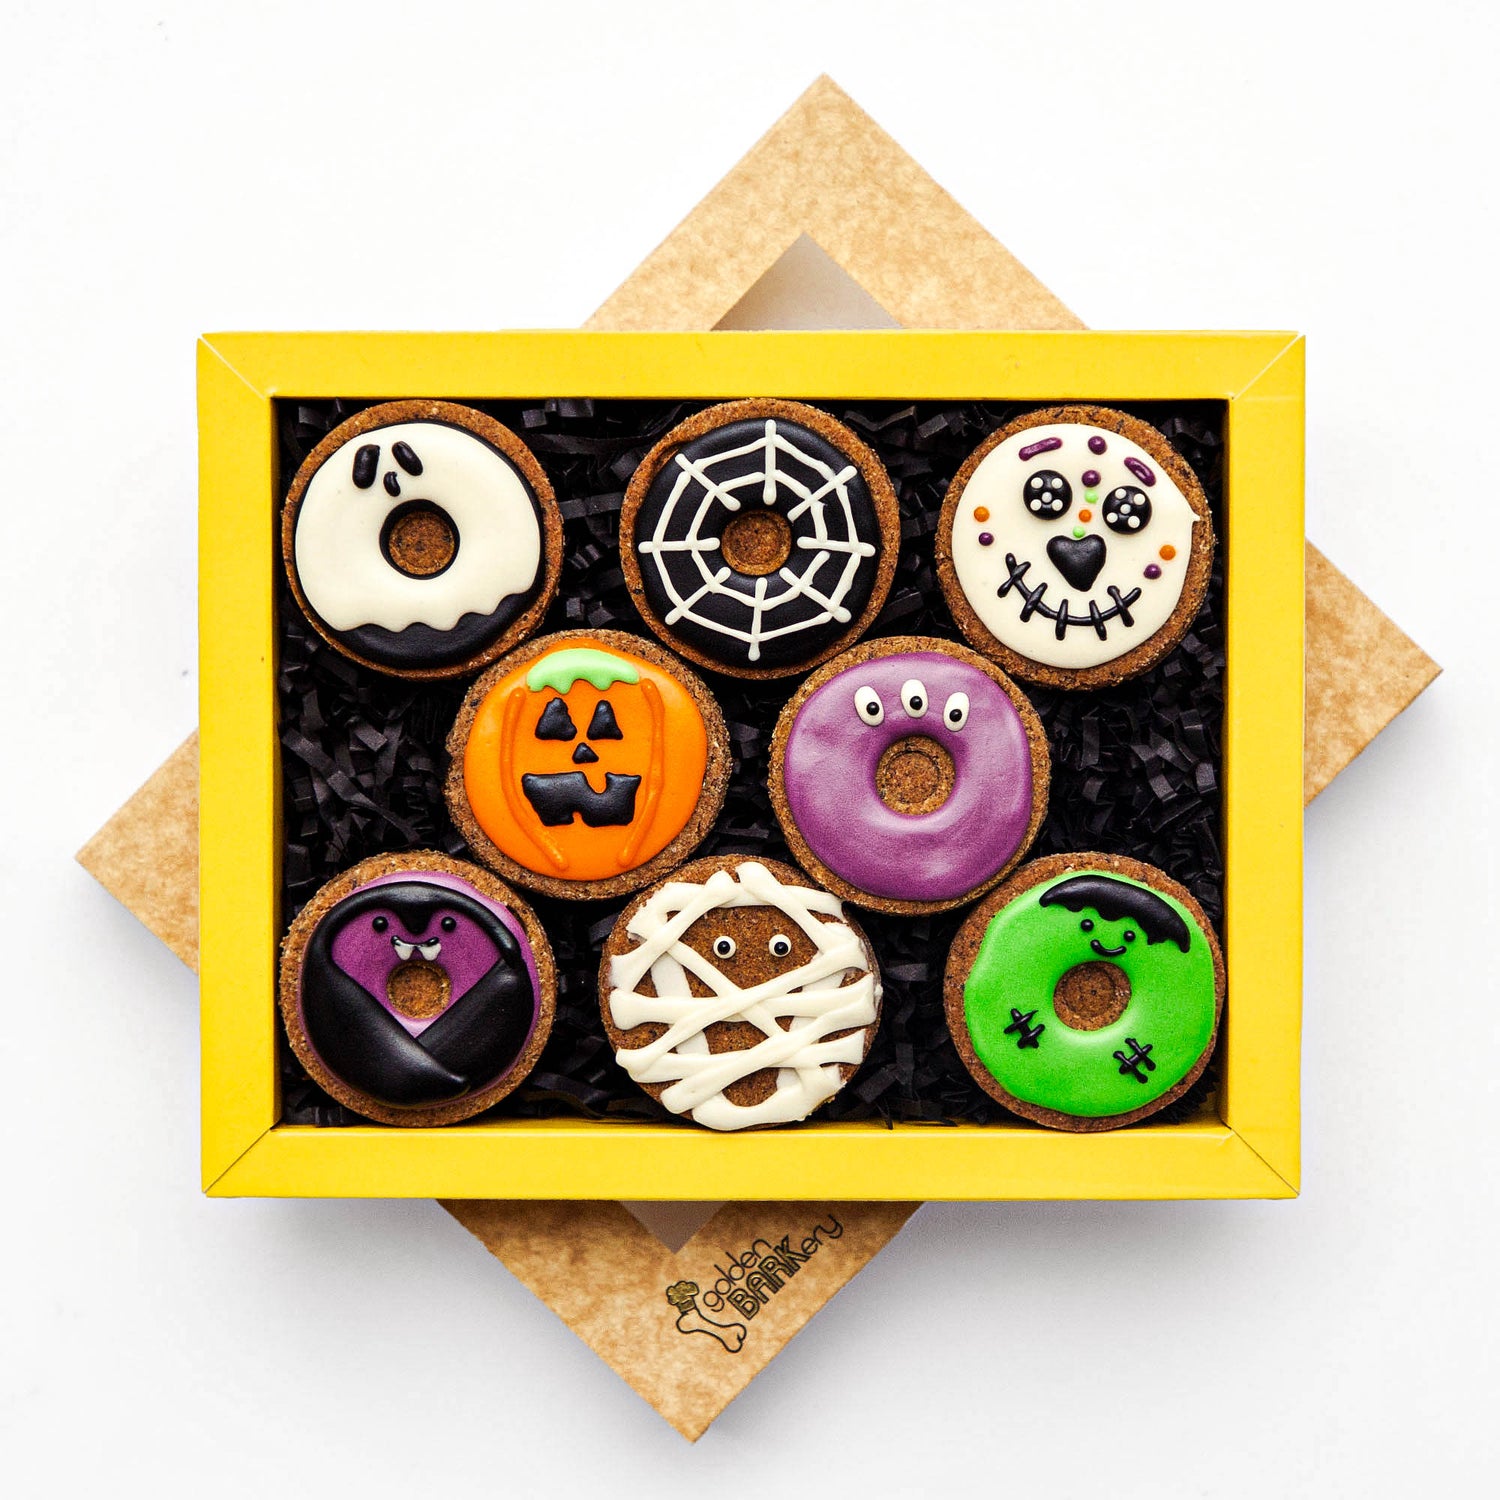    Halloween-Dog-Treats-Spooktacular-Donuts-On-Top